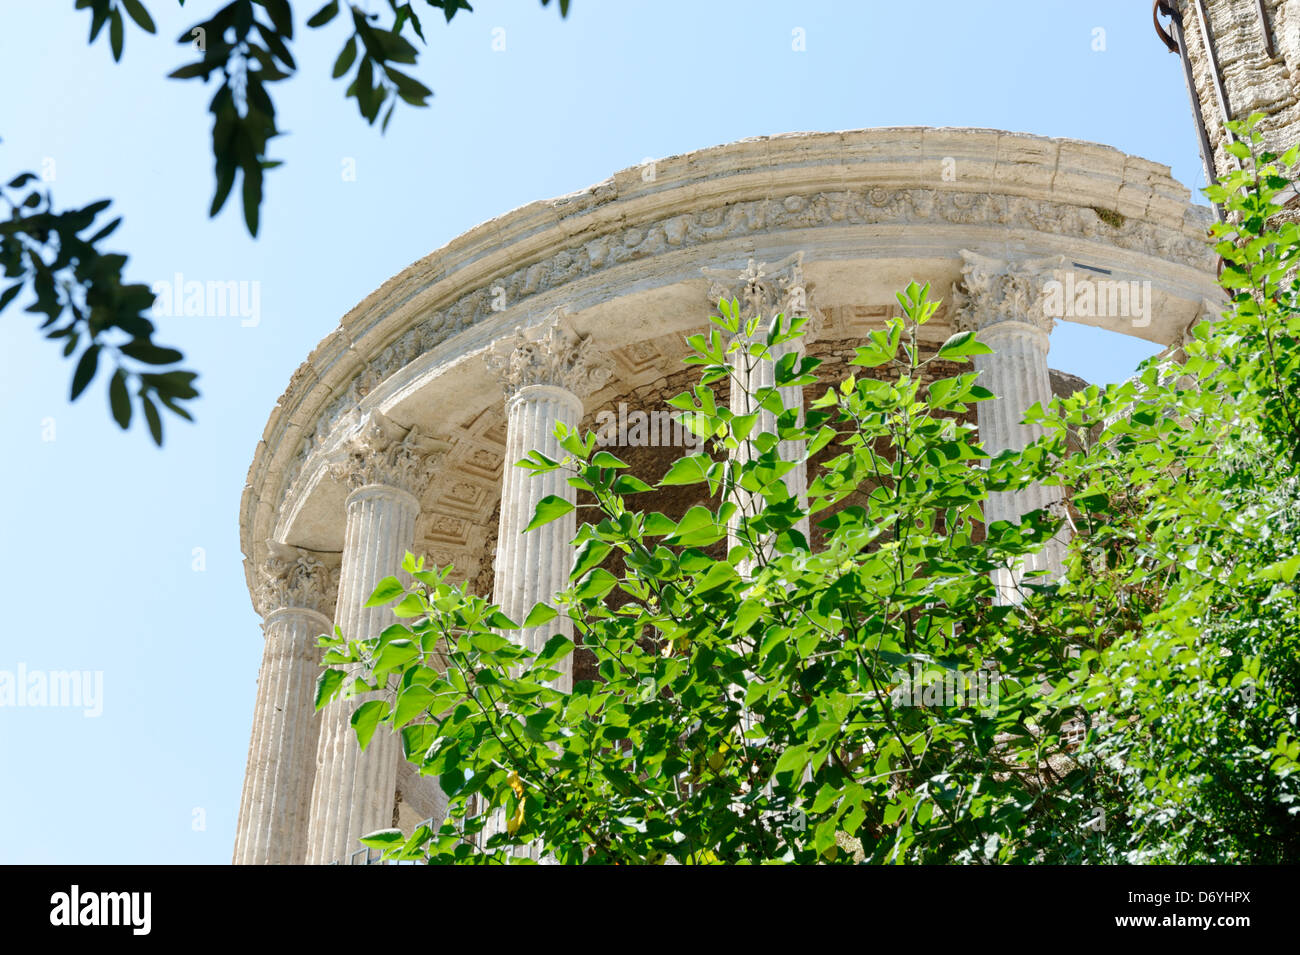 Il Parco di Villa Gregoriana. Tivoli. L'Italia. Vista del tempio romano di Vesta panoramically situato sull'Acropoli si affaccia sul Foto Stock